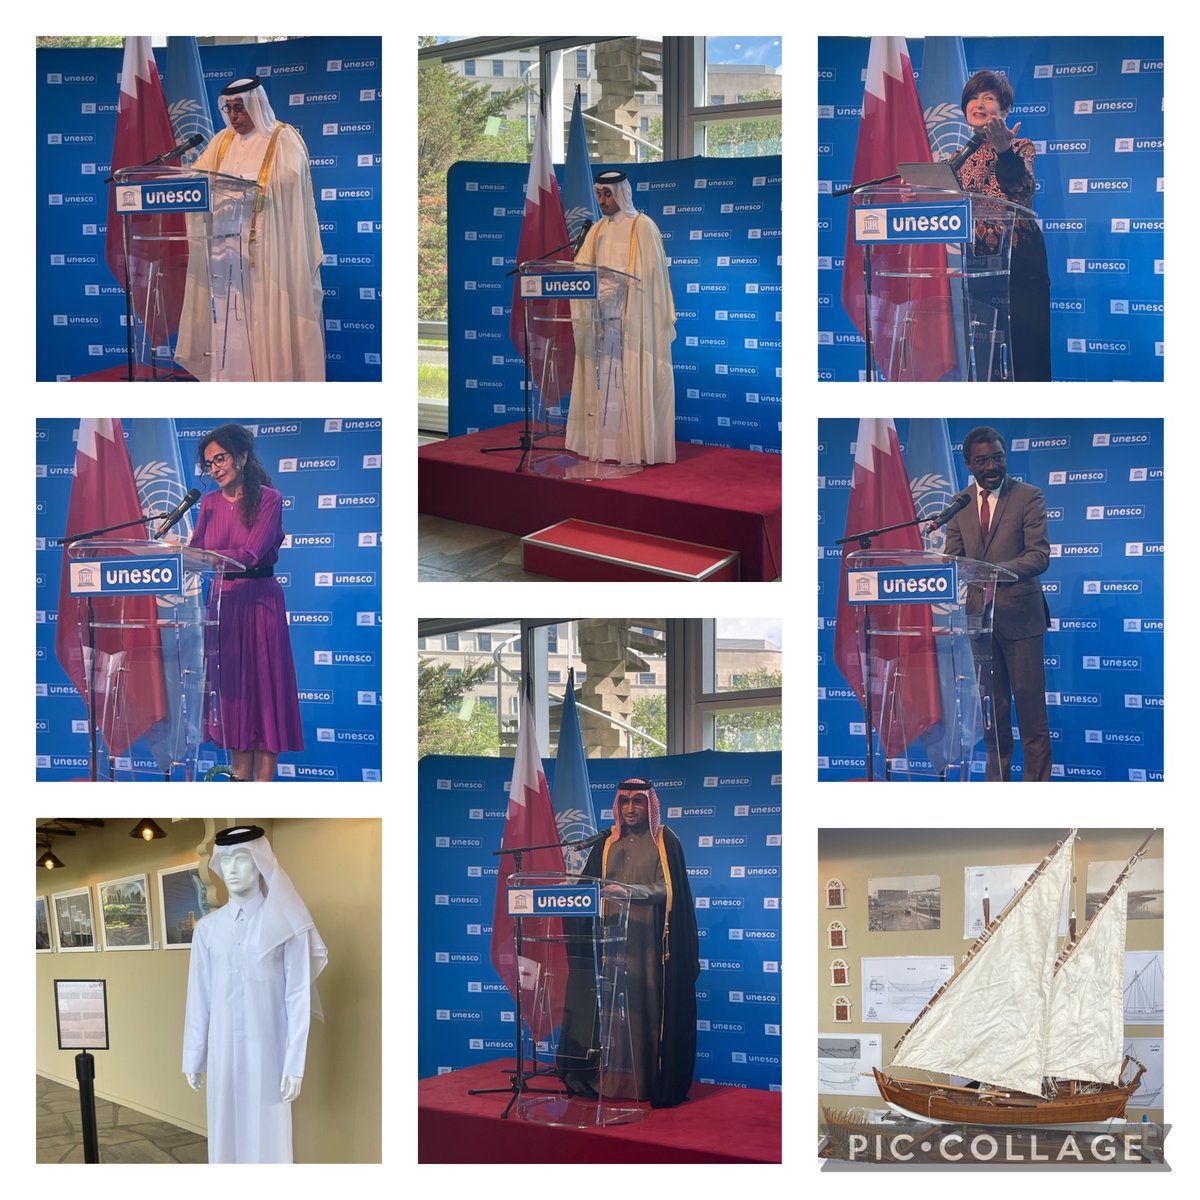 Félicitations aux ambassadeurs @HinzabH et SE Sheikh Ali bin Jassem Al Thani 🇶🇦 pour la magnifique exposition “Le Qatar célèbre le patrimoine culturel immatériel” avec la présence du directeur du Centre du Patrimoine mondial @unesco @elounasso @SMiculescu et @VeraForReform 🇺🇳🇶🇦